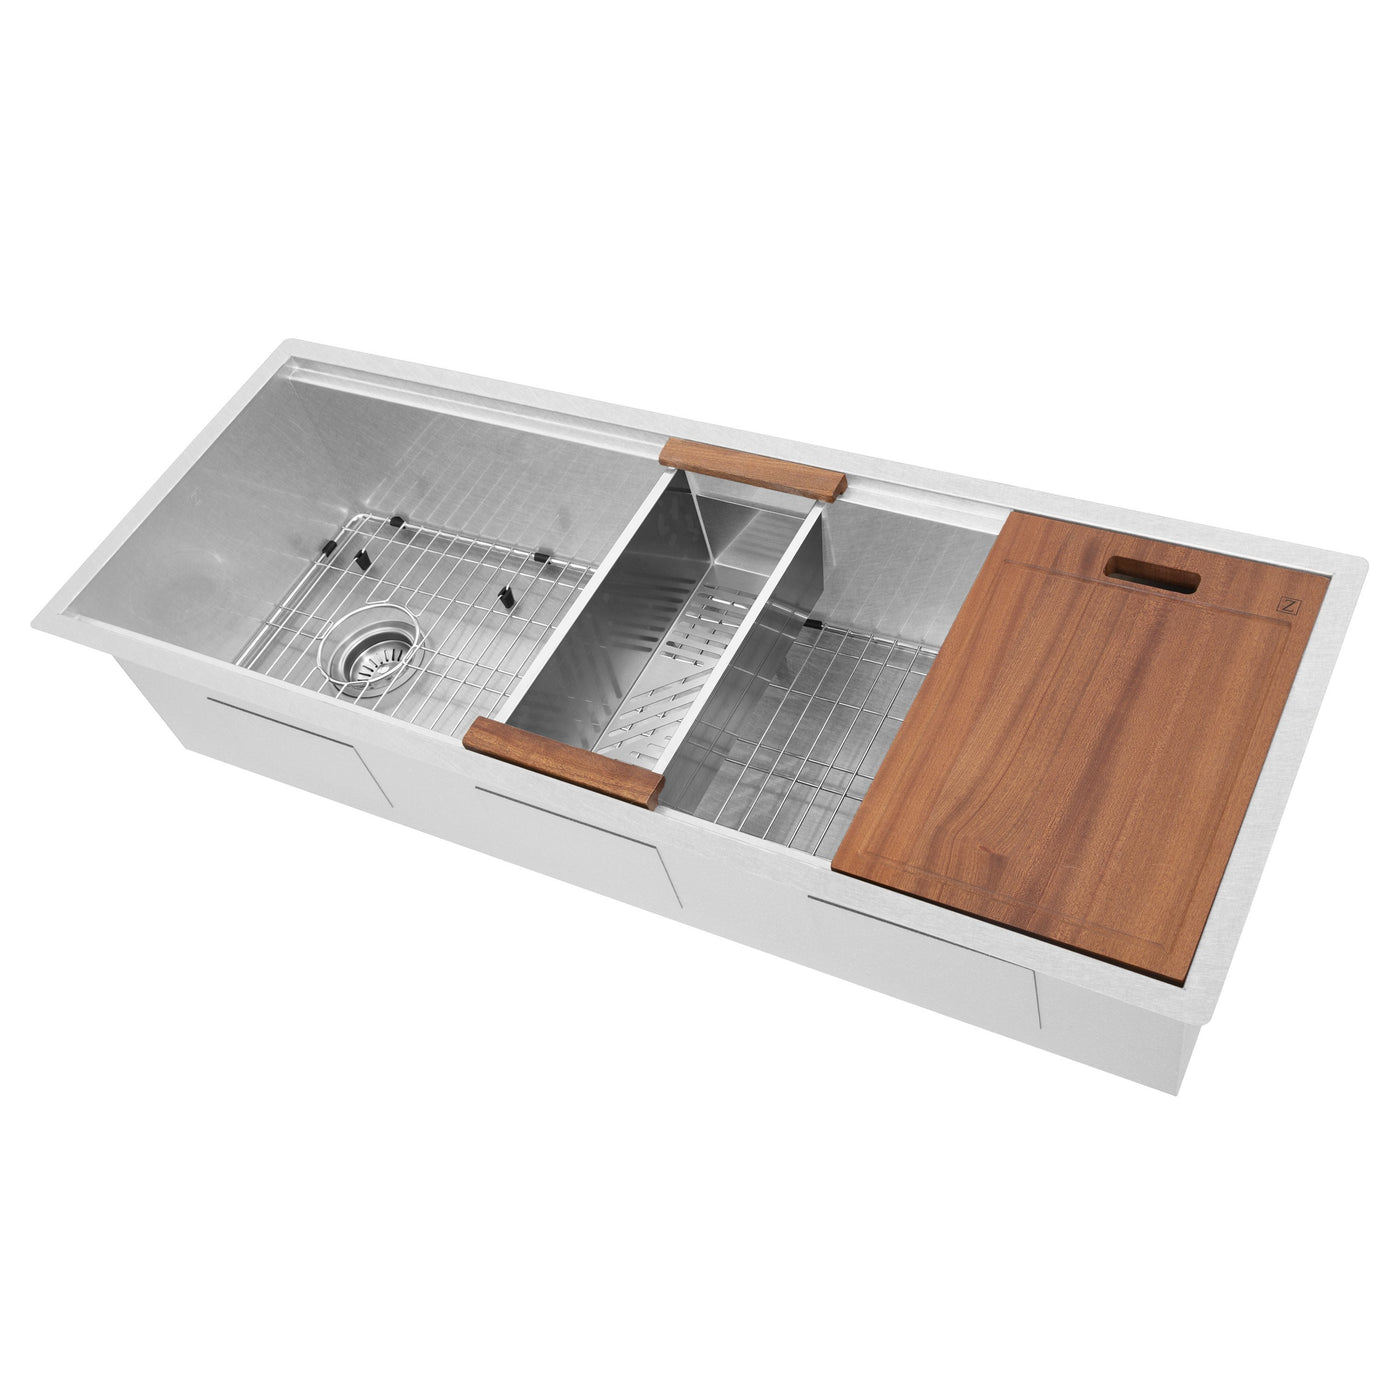 ZLINE 45" Garmisch Undermount Single Bowl DuraSnow® Stainless Steel Kitchen Sink with Bottom Grid and Accessories (SLS-45S)